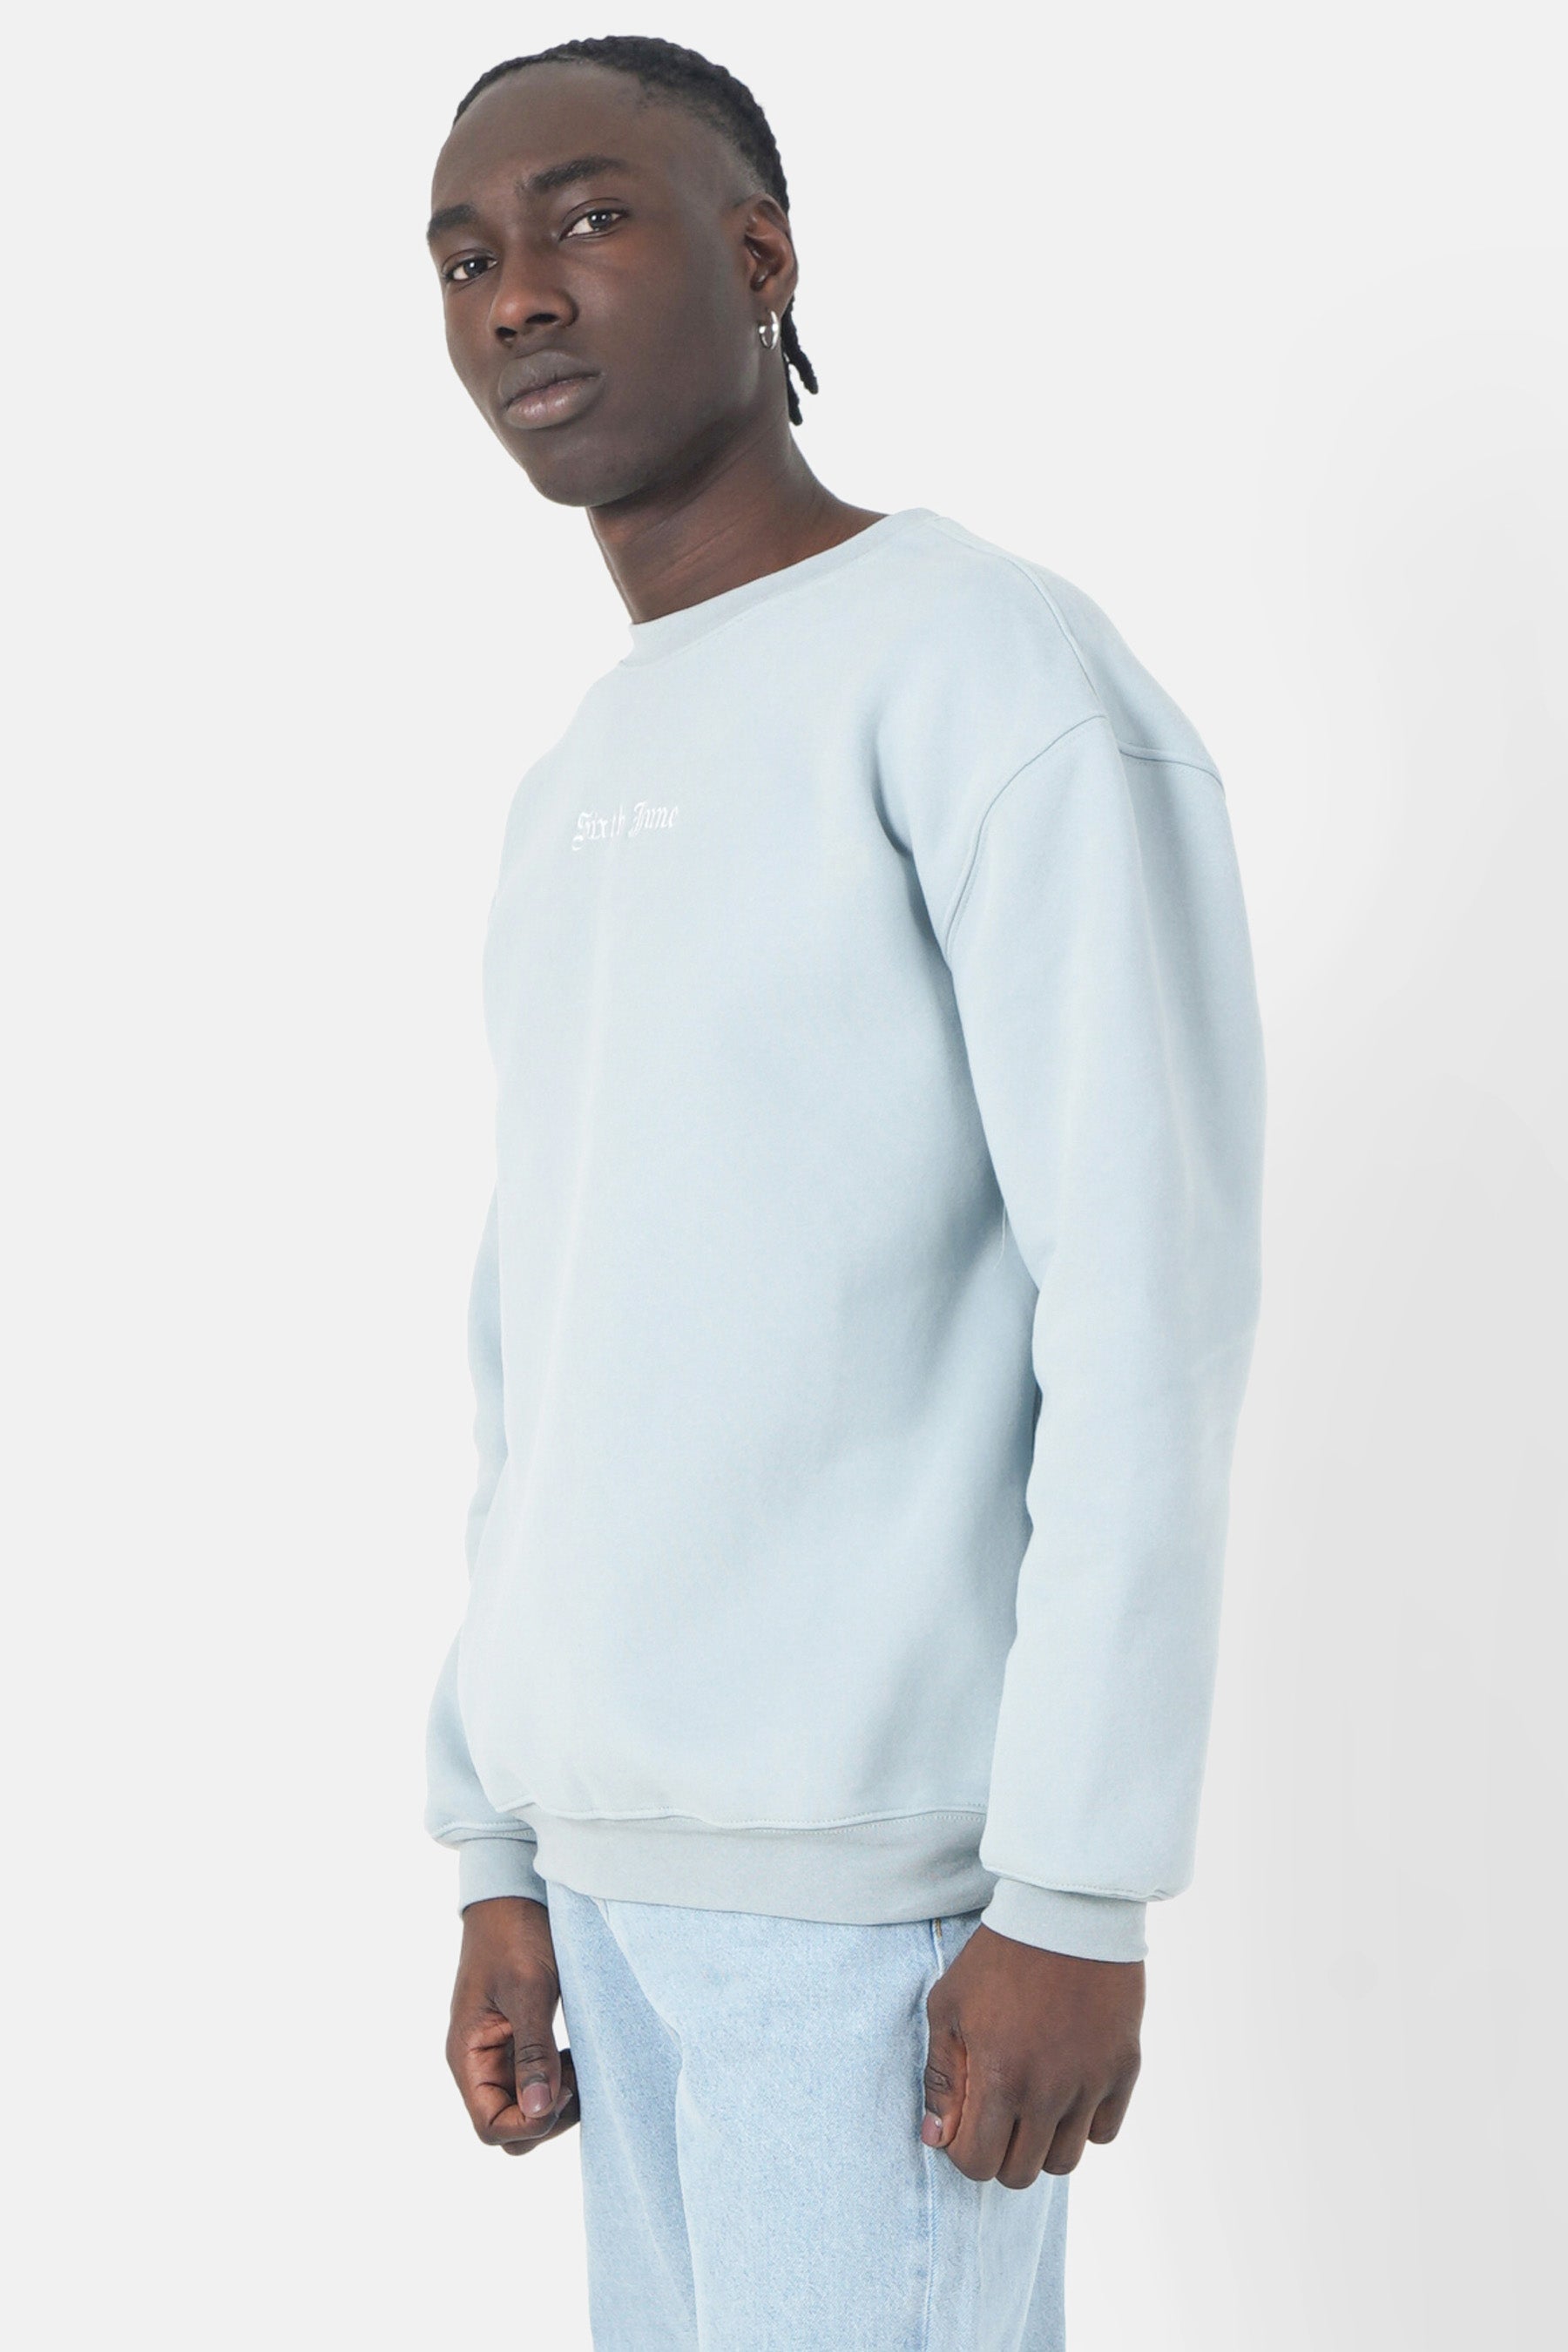 Übergroßes Sweatshirt mit Rundhalsausschnitt und Stickerei. Hellblau